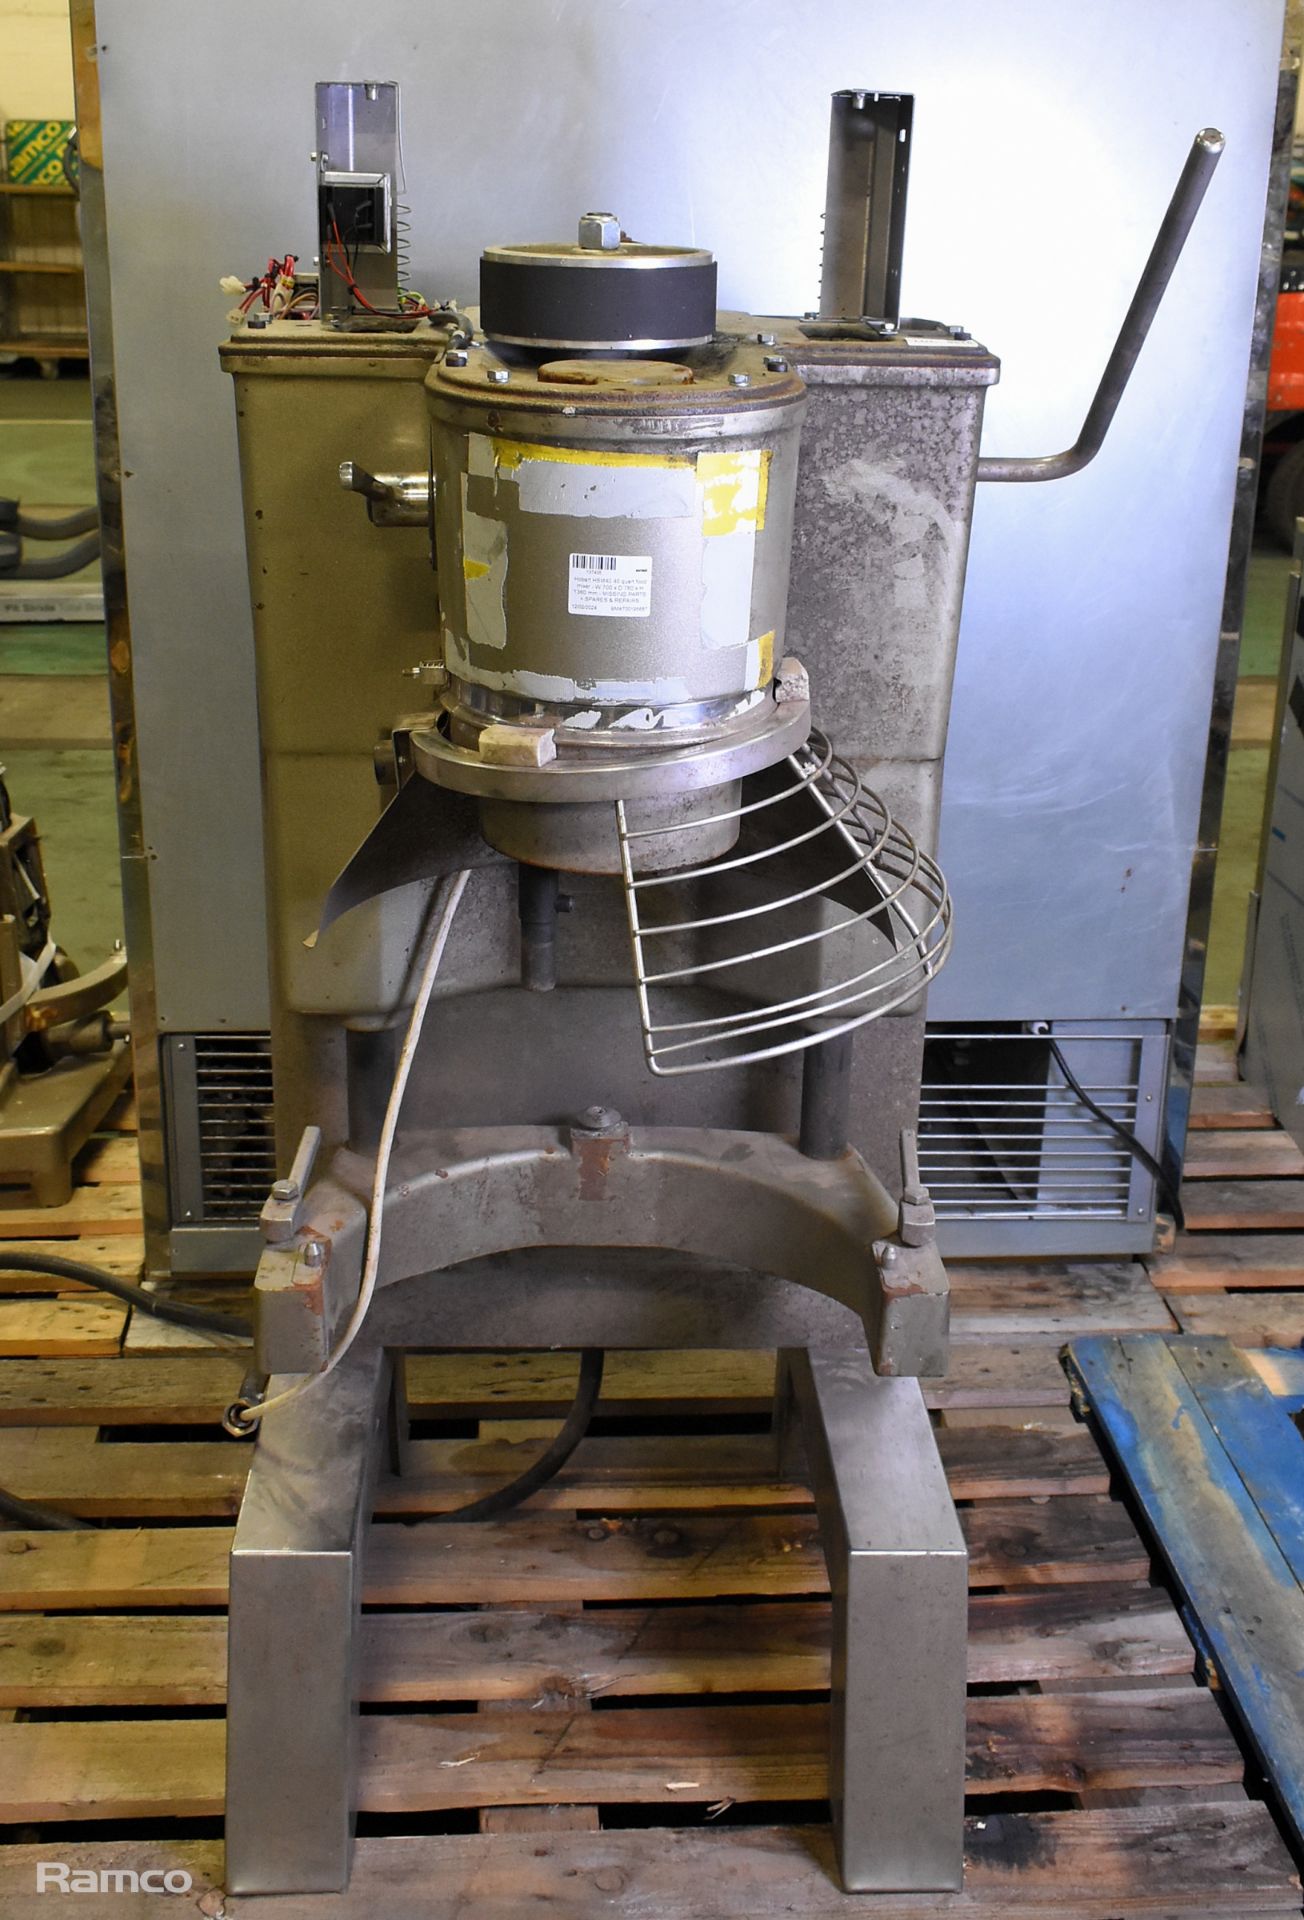 Hobart HSM40 40 quart food mixer - W 700 x D 780 x H 1360 mm - MISSING PARTS - AS SPARES & REPAIRS